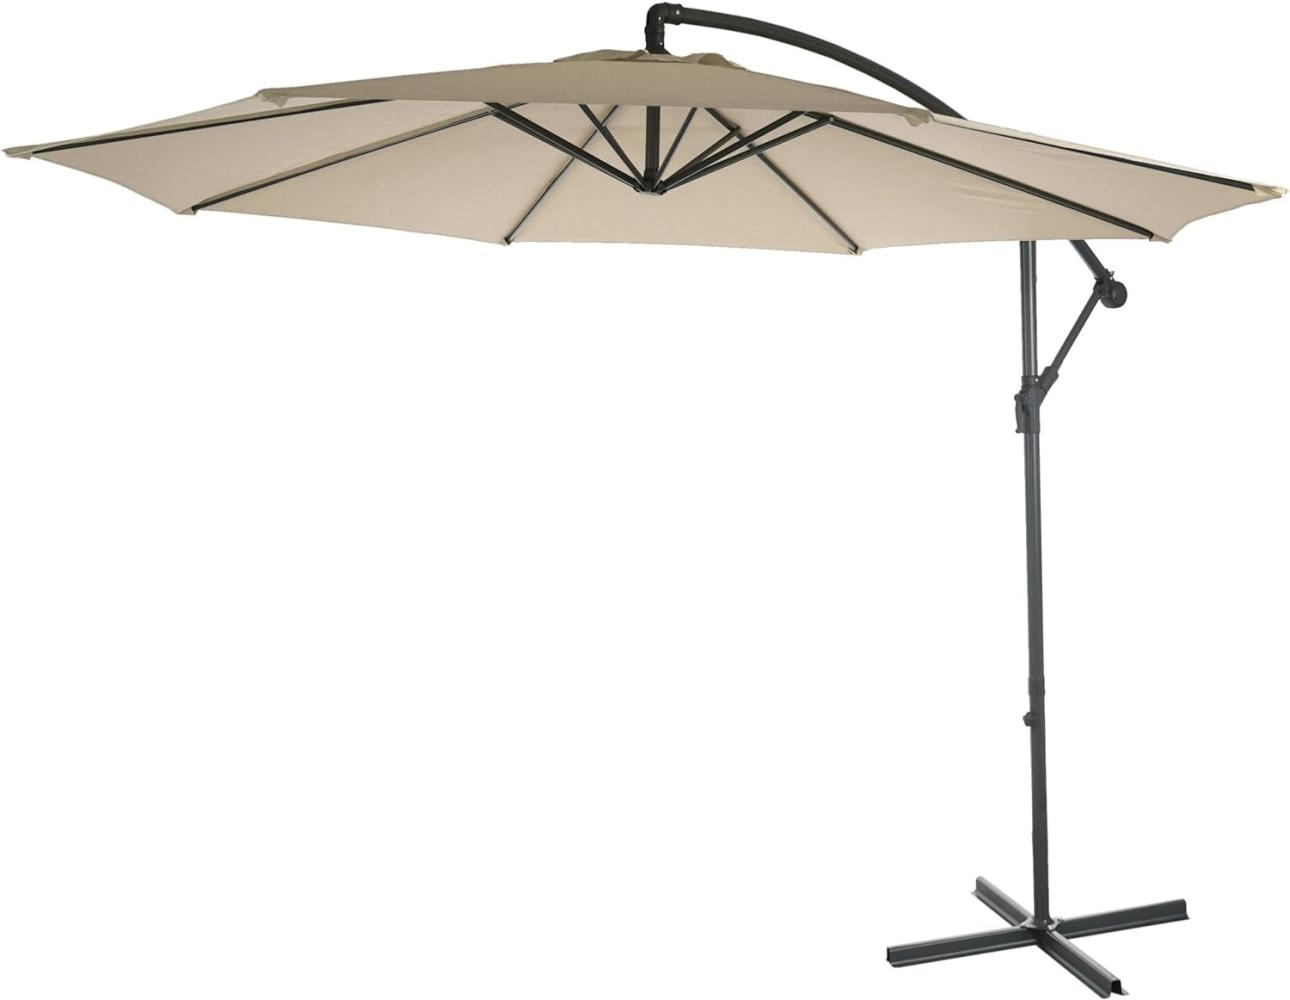 Ampelschirm Acerra, Sonnenschirm Sonnenschutz, Ø 3m neigbar, Polyester/Stahl 11kg ~ creme ohne Ständer Bild 1